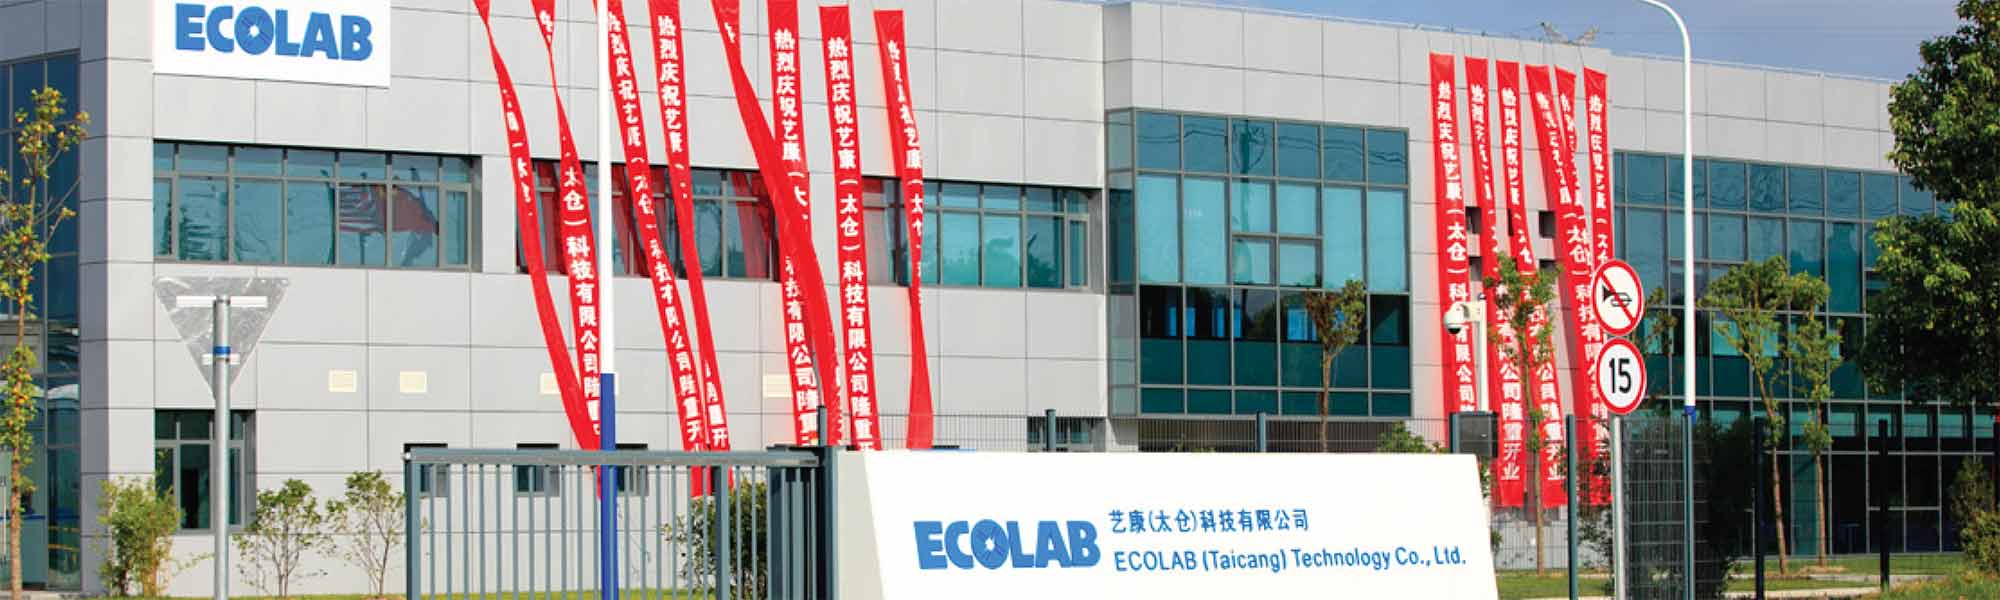 Usine de fabrication Ecolab à Taicang, Chine, certifiée chef de file en matière de gestion des ressources hydriques